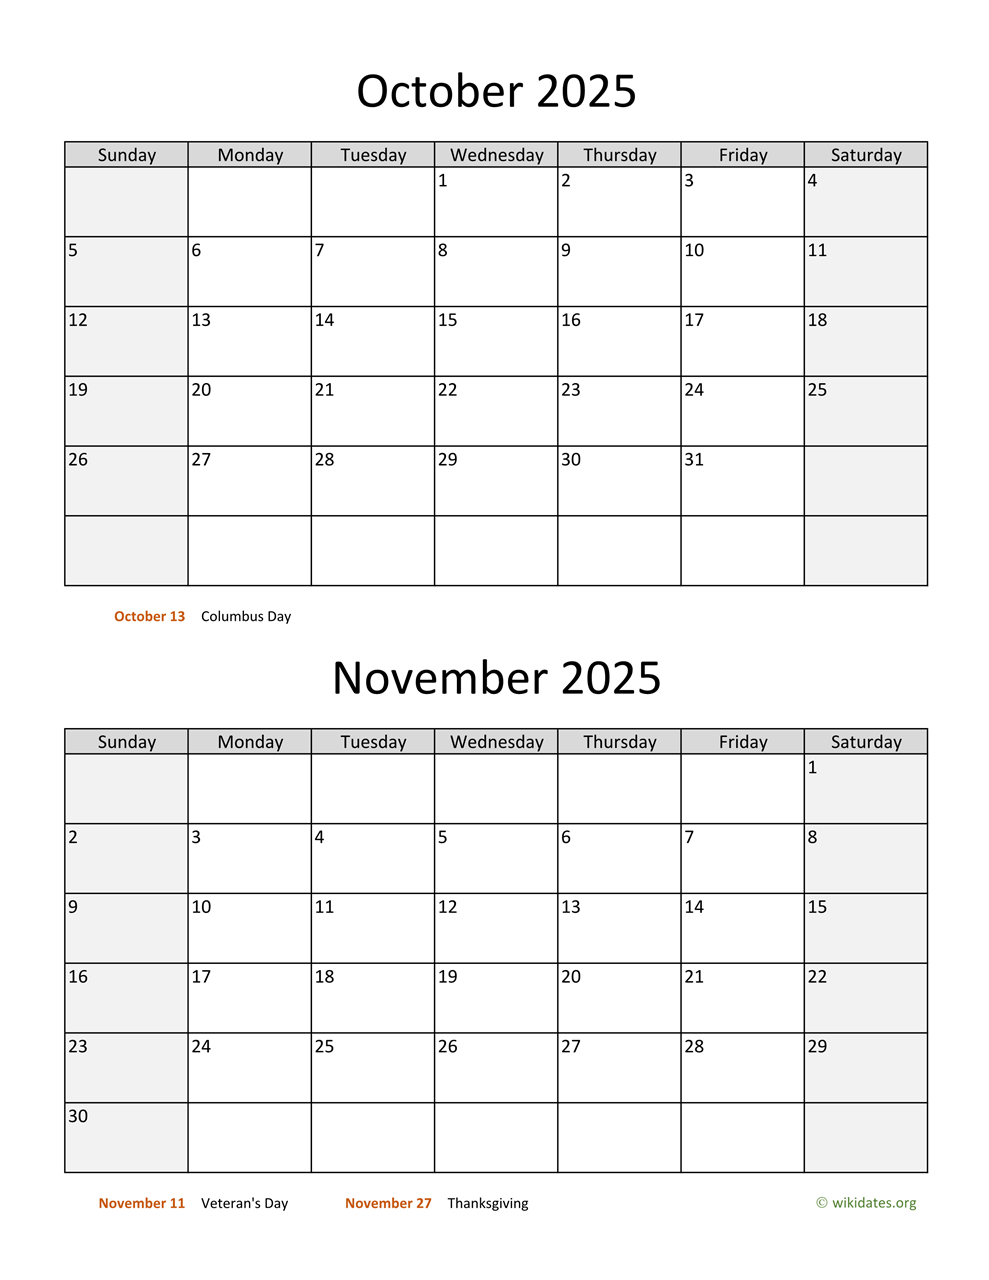 October and November 2025 Calendar  WikiDates.org